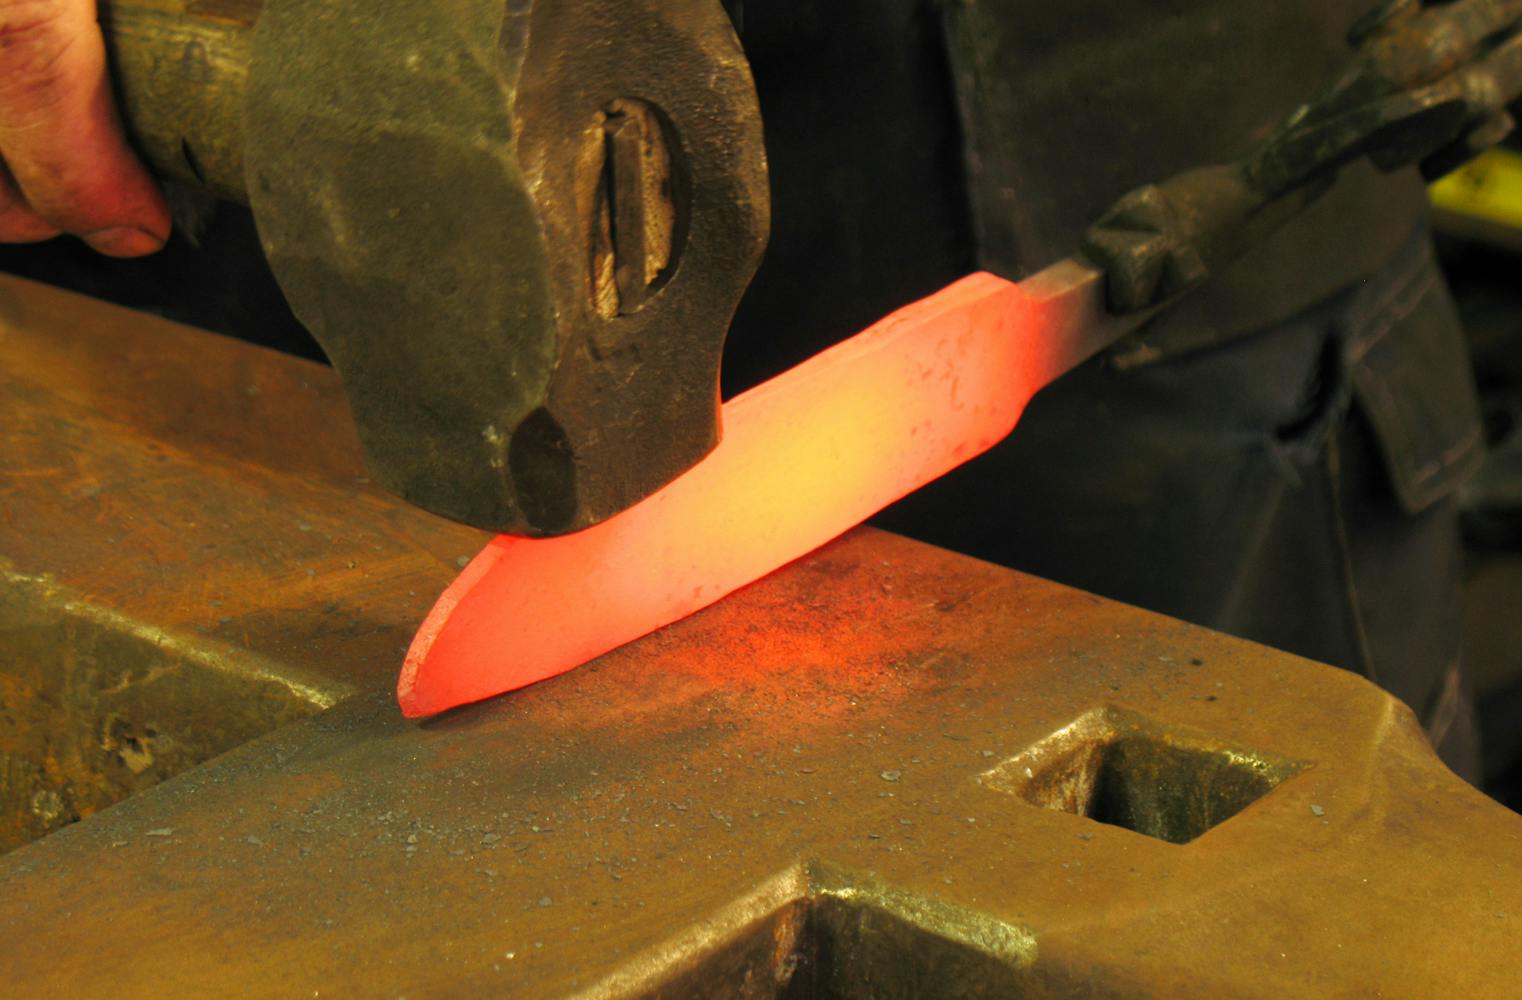 Messer schmieden | uraltes Schmiede-Handwerk erlernen